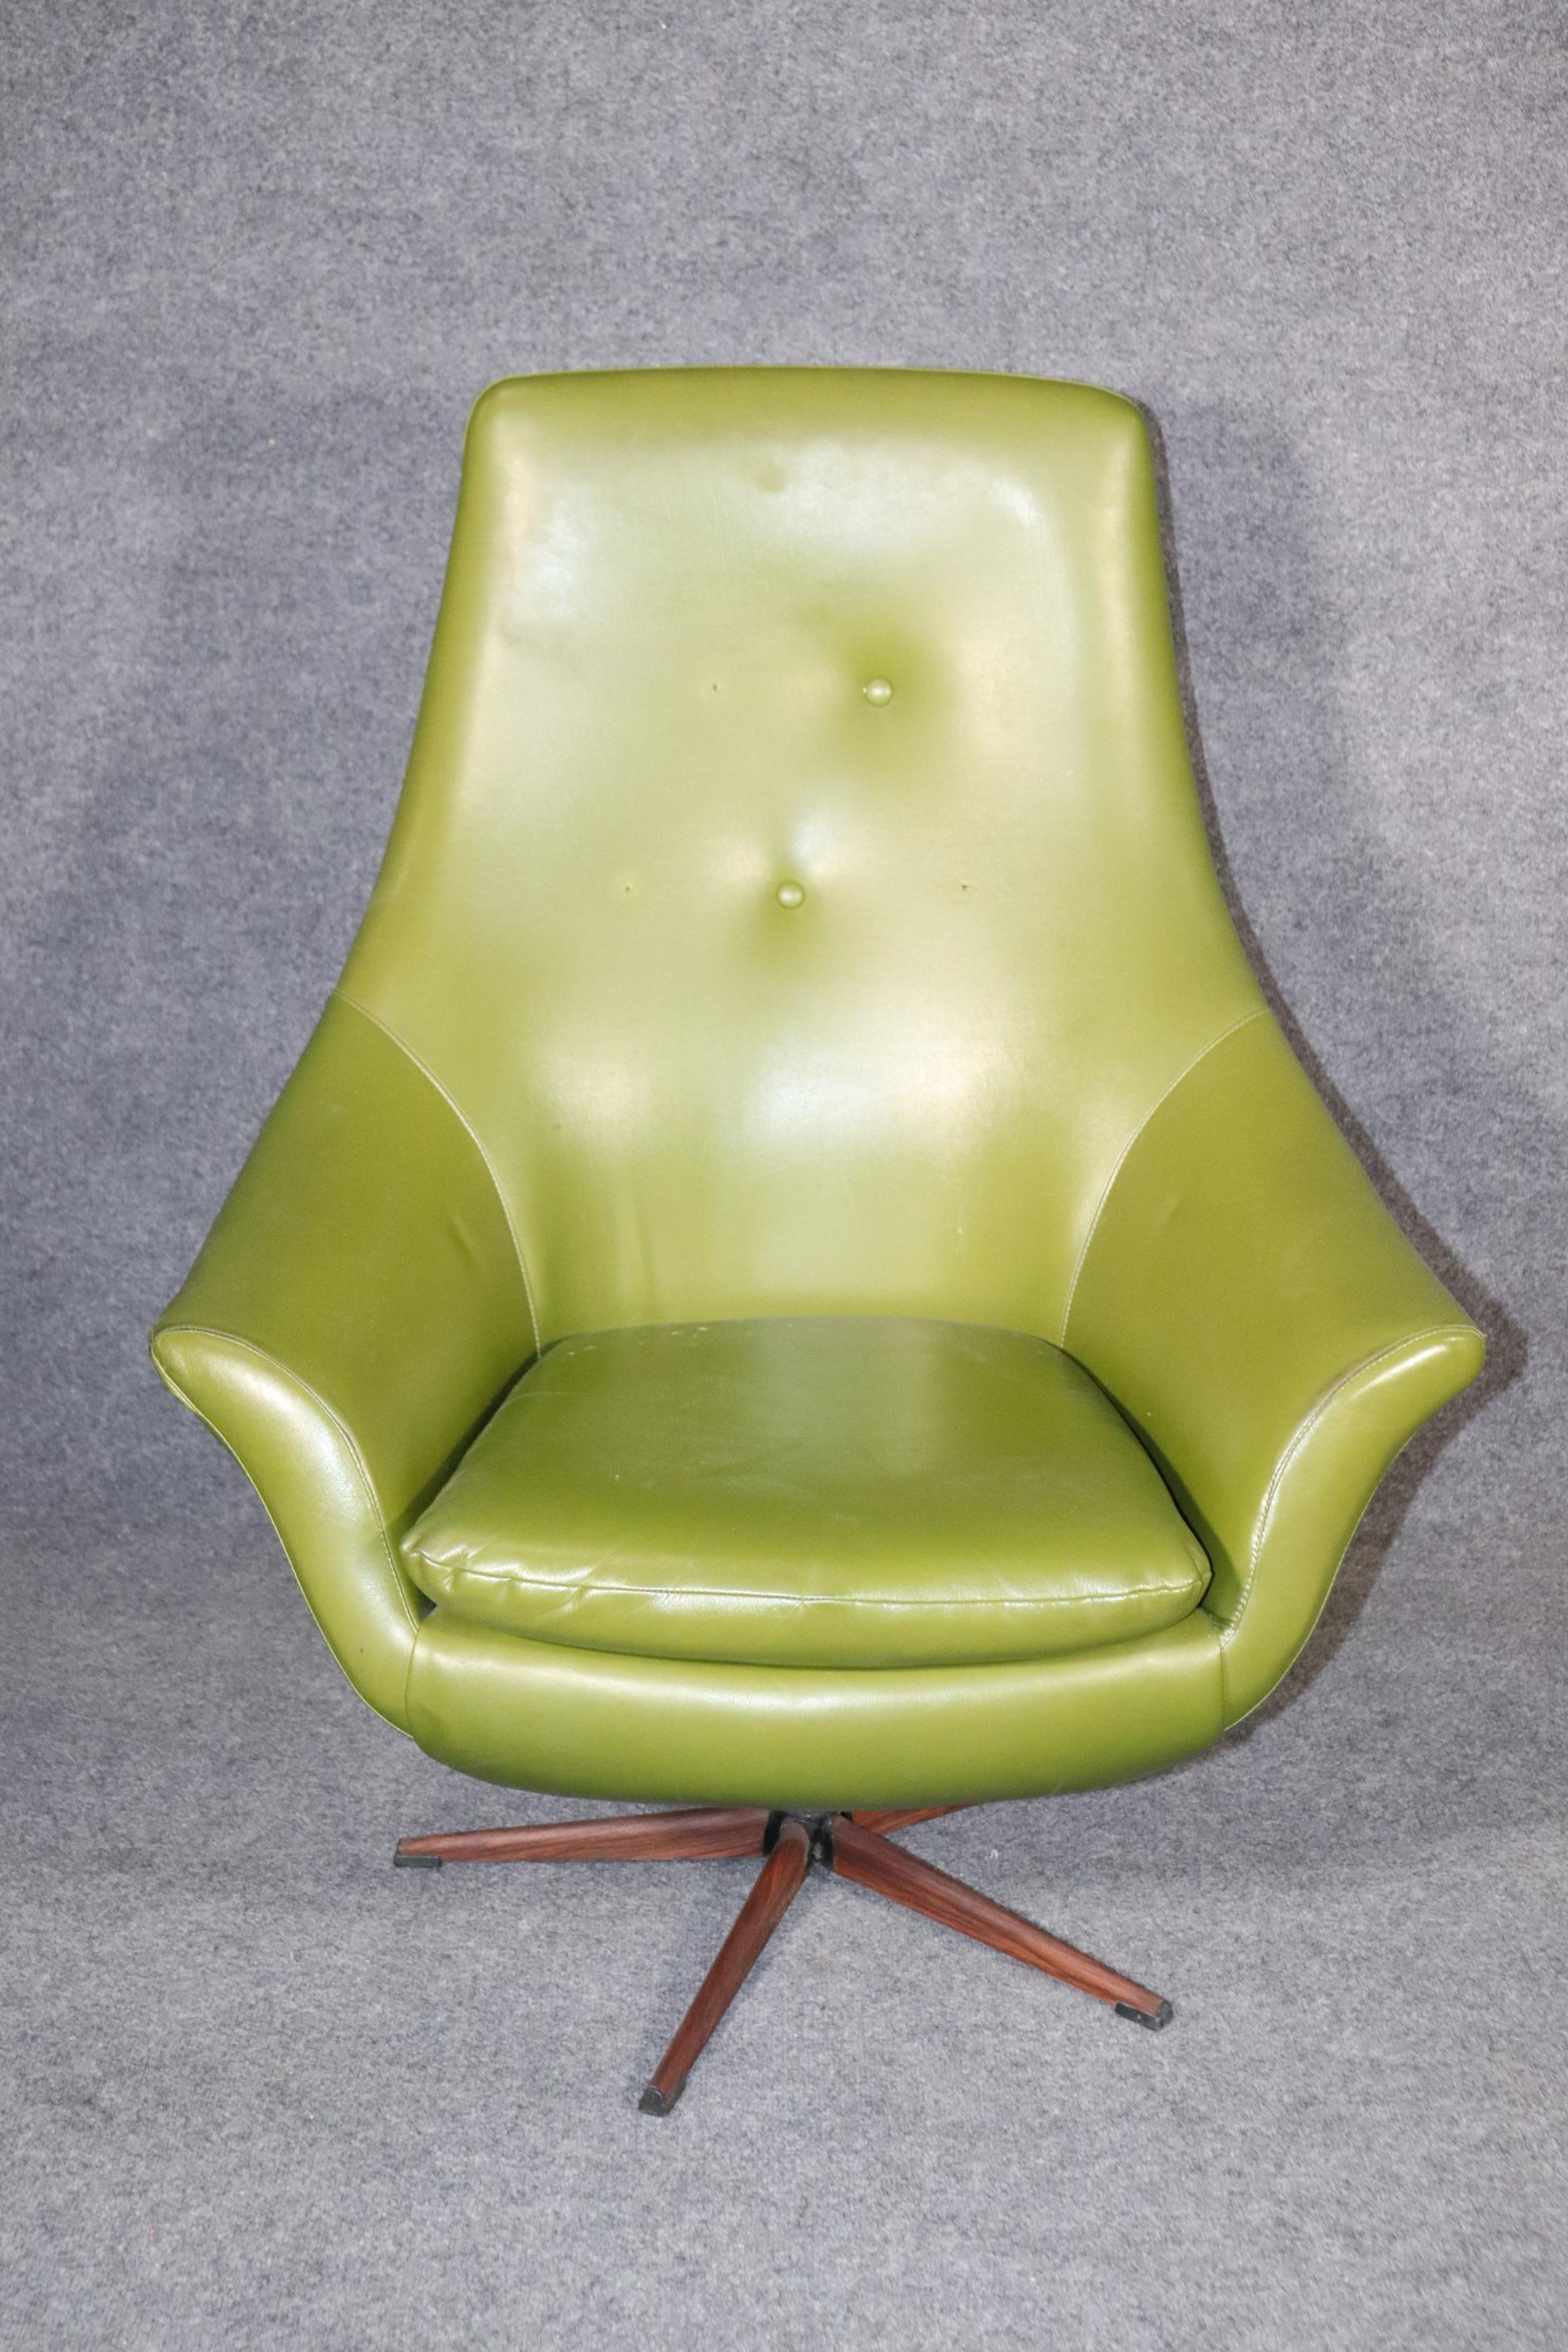 Chaise longue moderne des années 1960 avec ottoman en tissu vinyle vert vif. Action de pivotement avec des lignes modernes incurvées.
Veuillez confirmer le lieu NY ou NJ